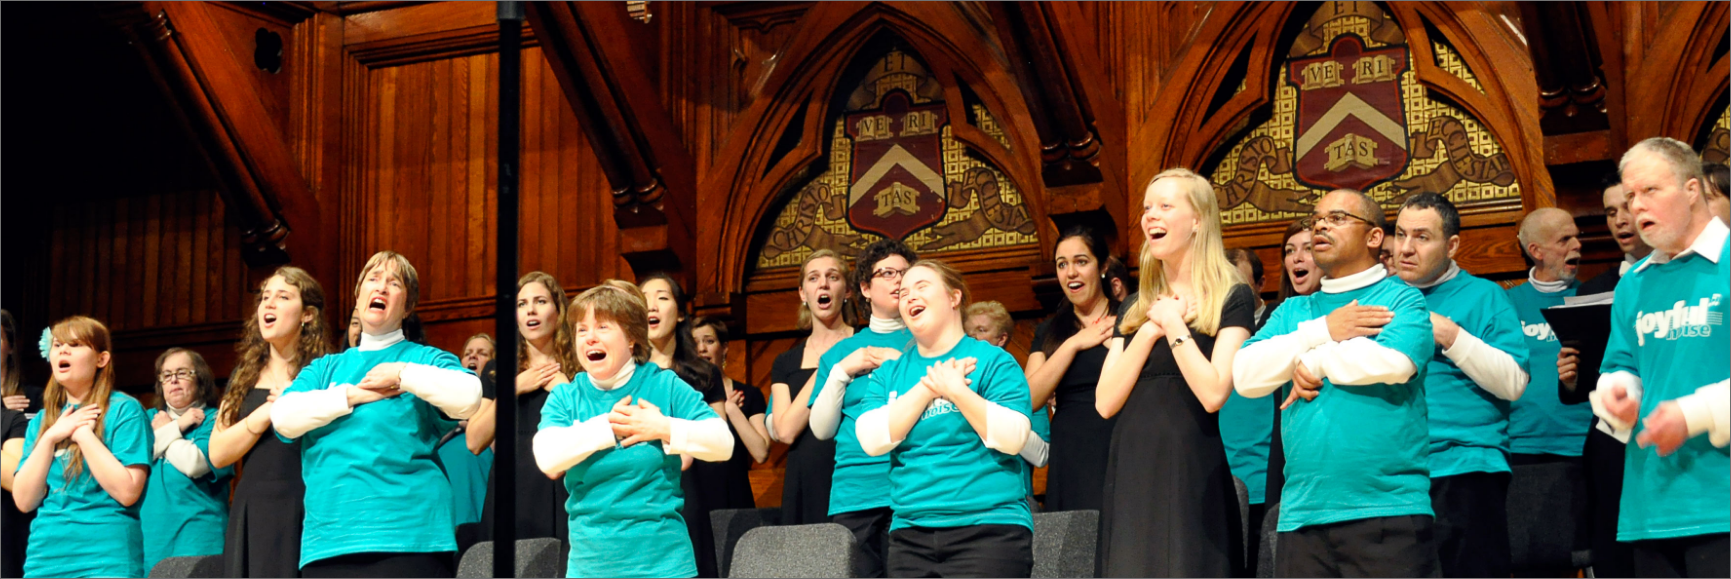 The Harvard-Radcliffe Collegium Musicum hosting Joyful Noise at Sanders Theatre